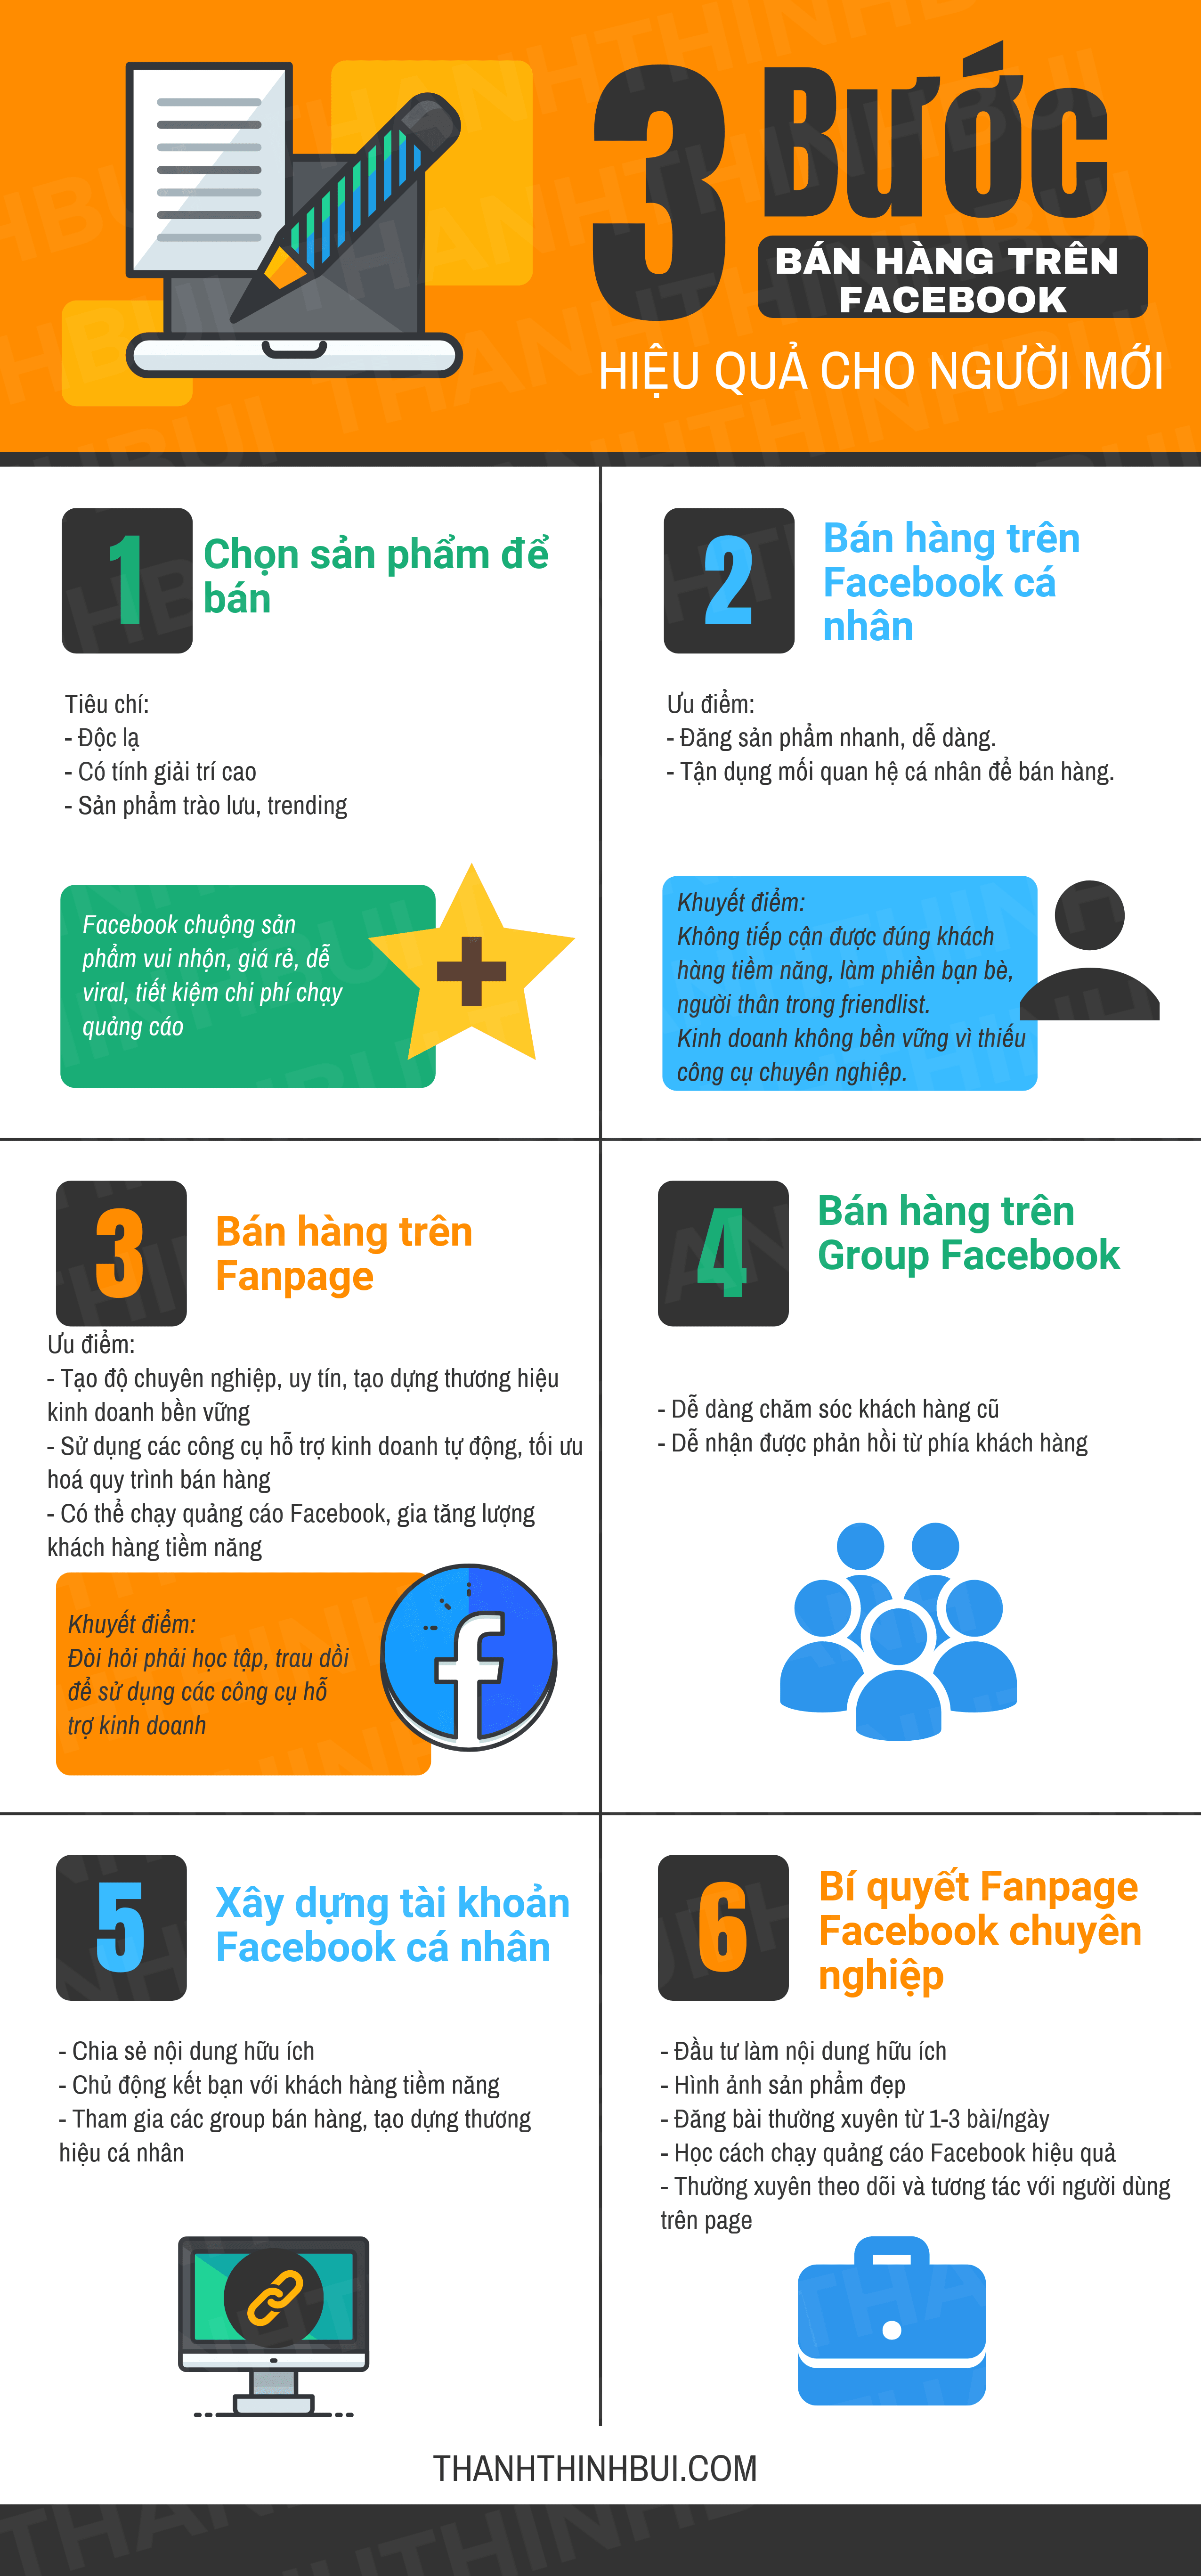 3 bước bán hàng trên Facebook hiệu quả cho người mới (Update 2020)